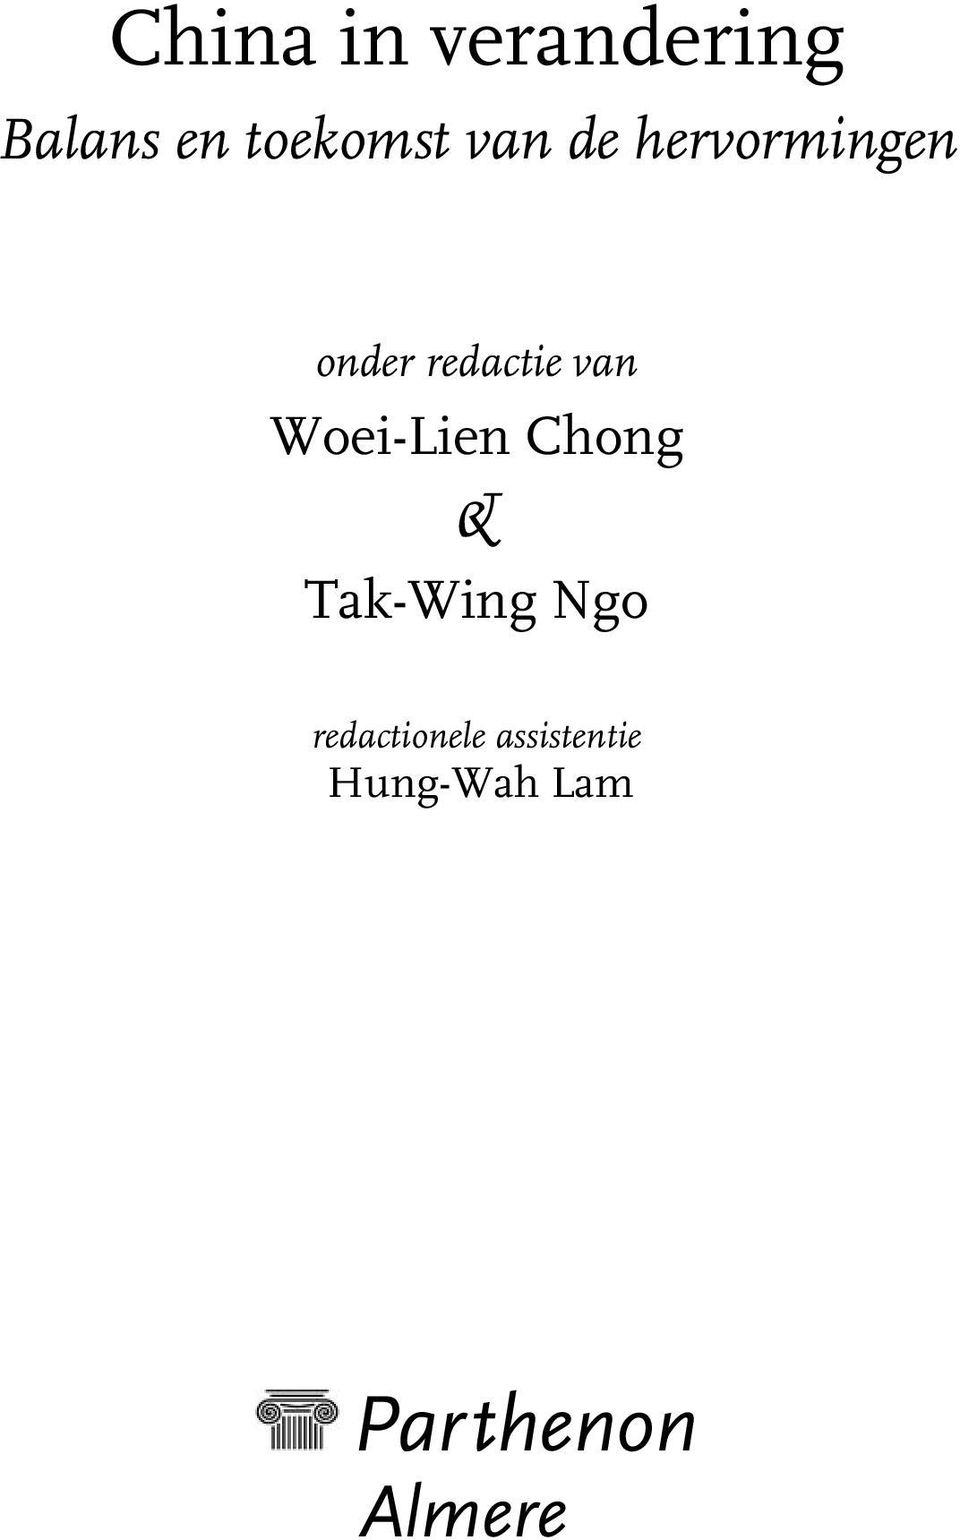 Woei-Lien Chong & Tak-Wing Ngo